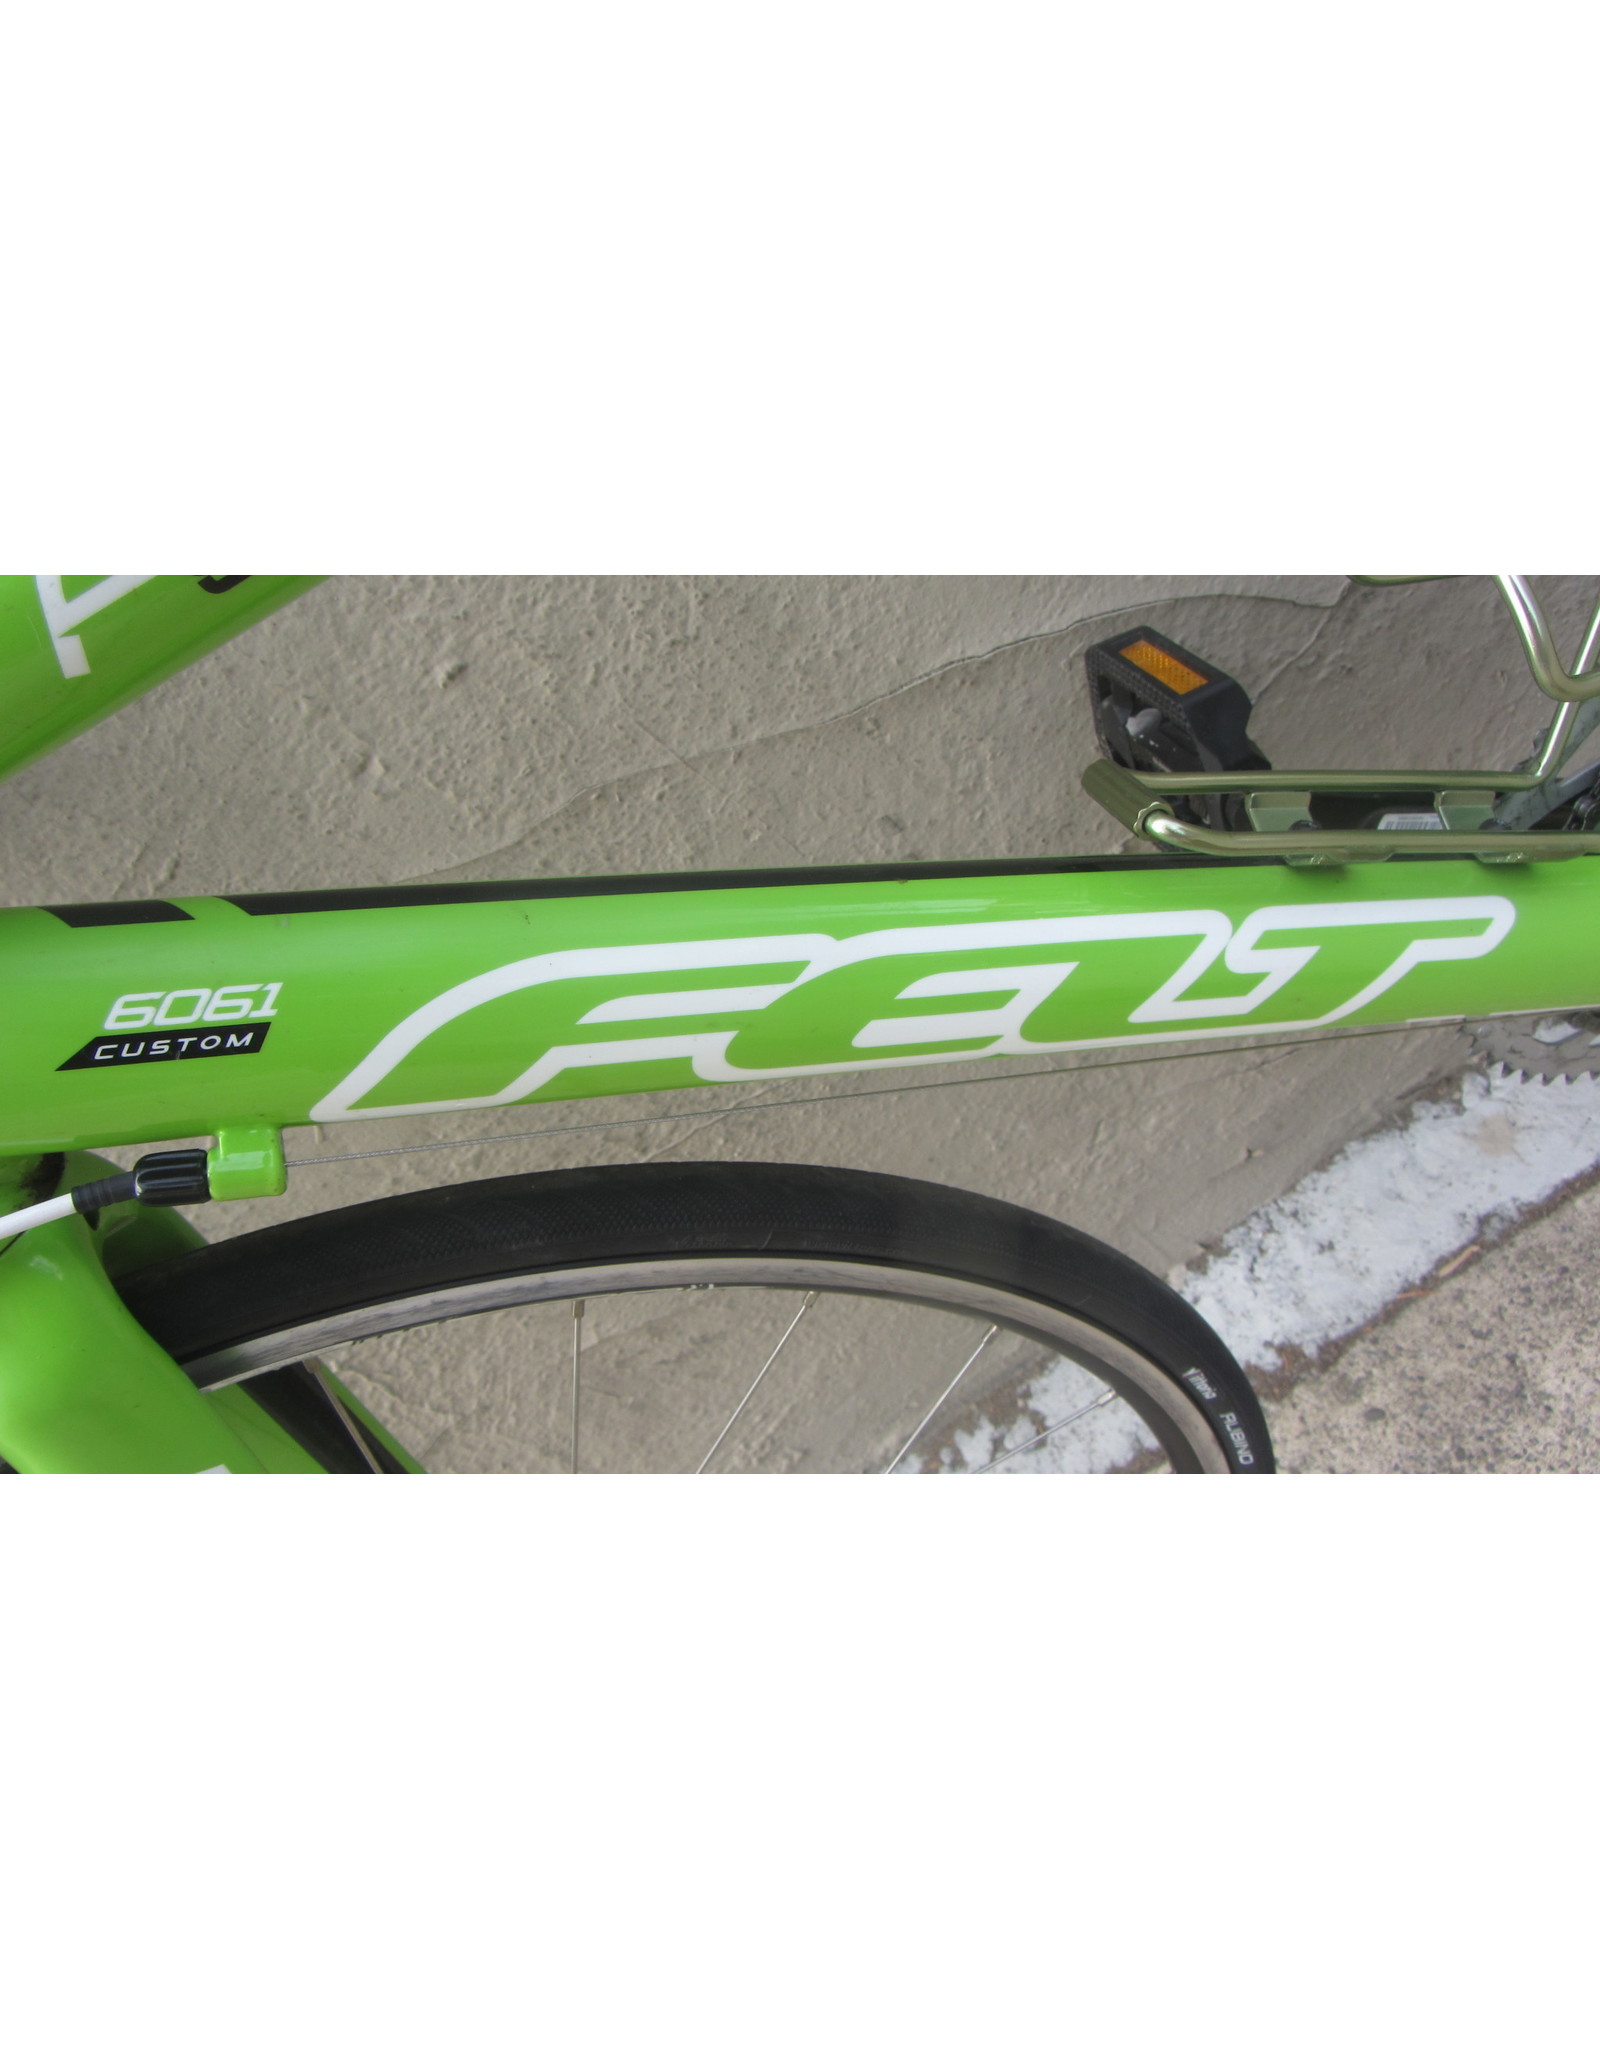 Felt Felt F95 Jr., Youth, 2013, 16 Inches, Green